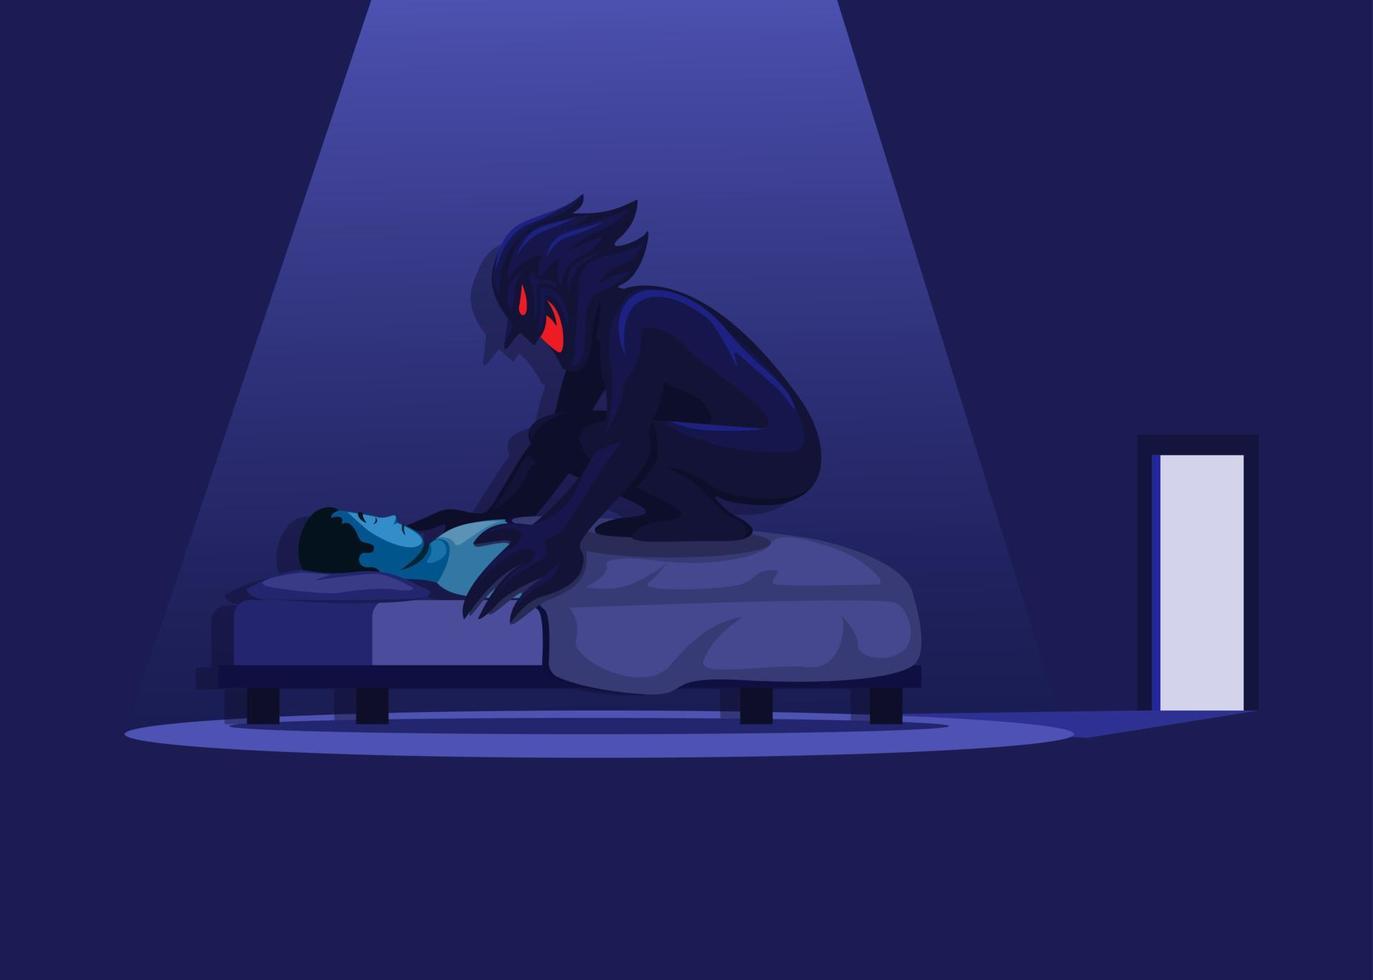 paralisi del sonno con demone a letto. illustrazione vettoriale di scena horror da incubo